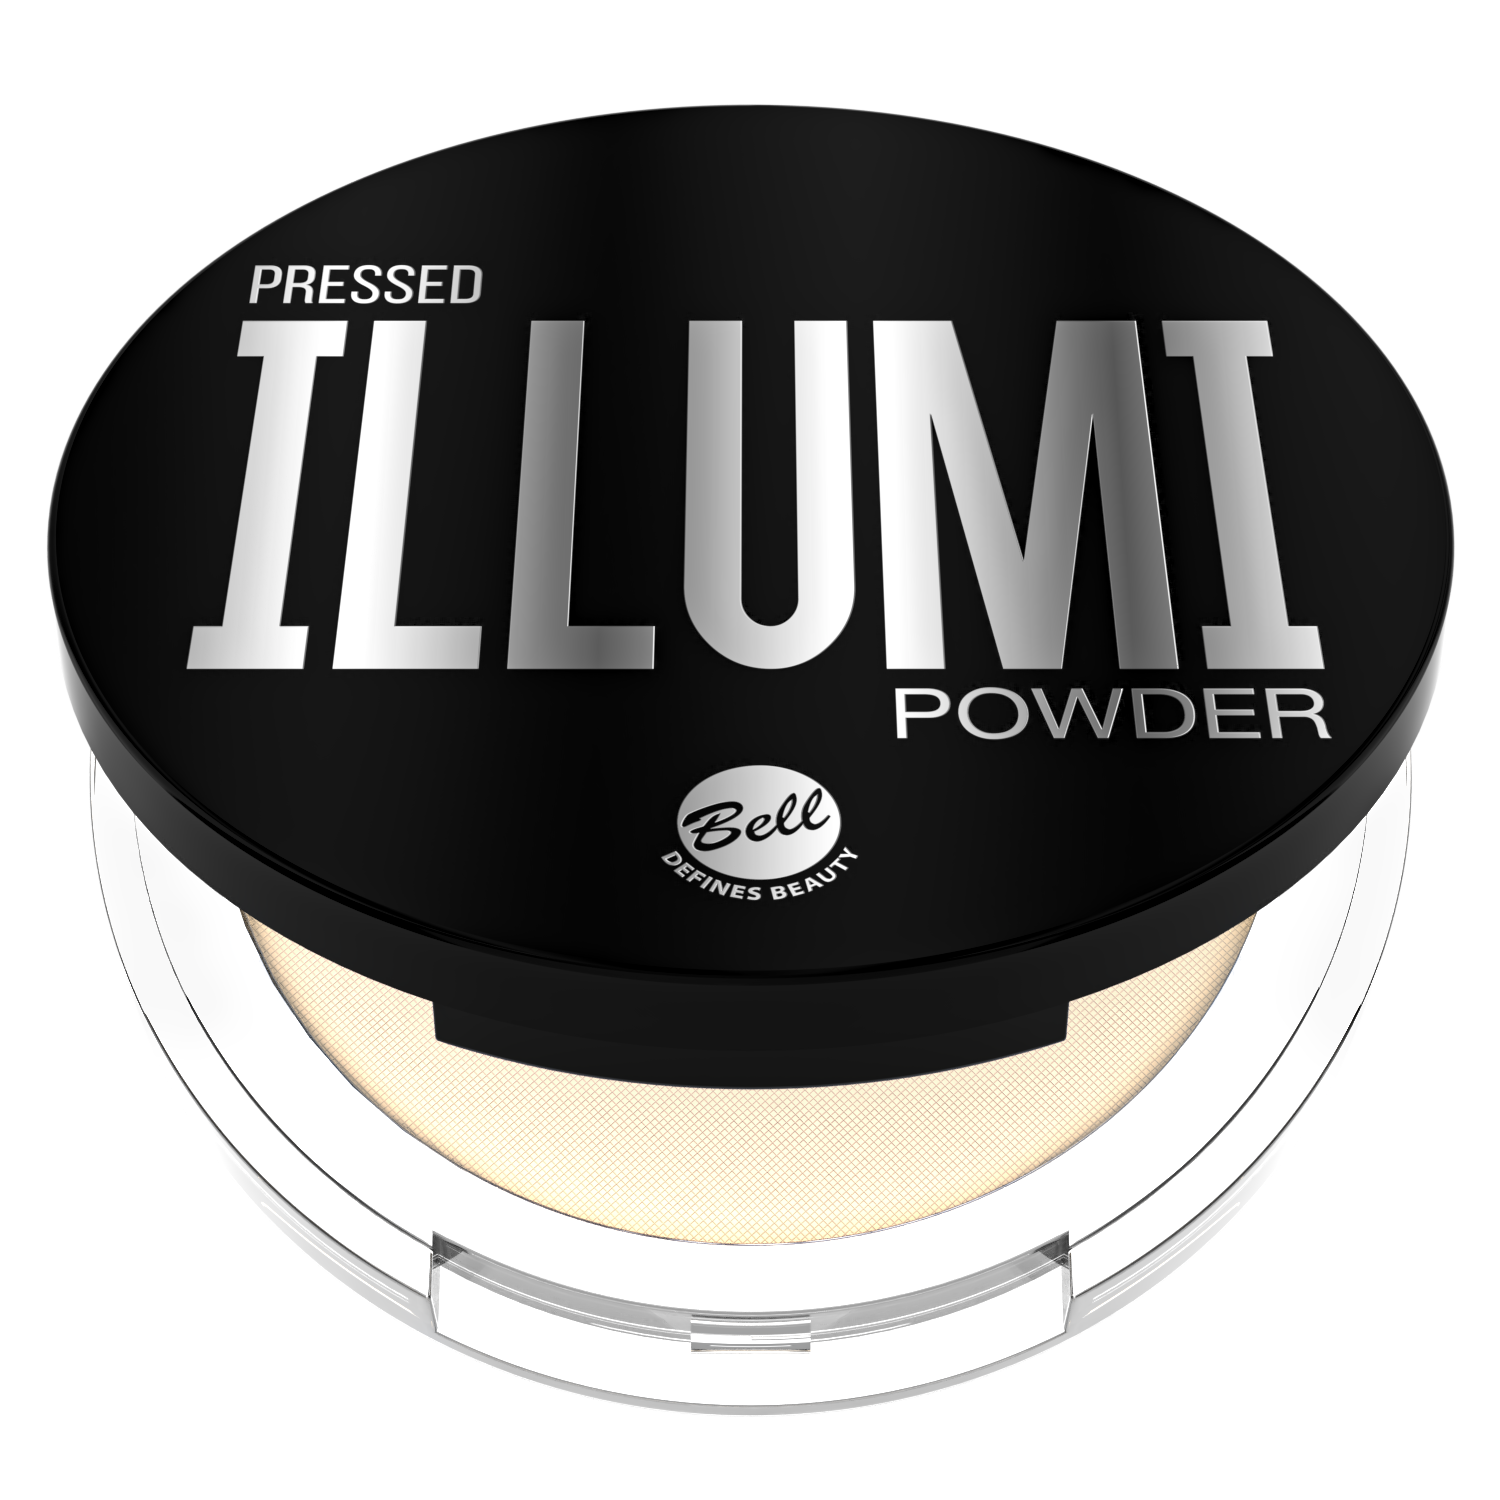 Pressed Illumi Powder